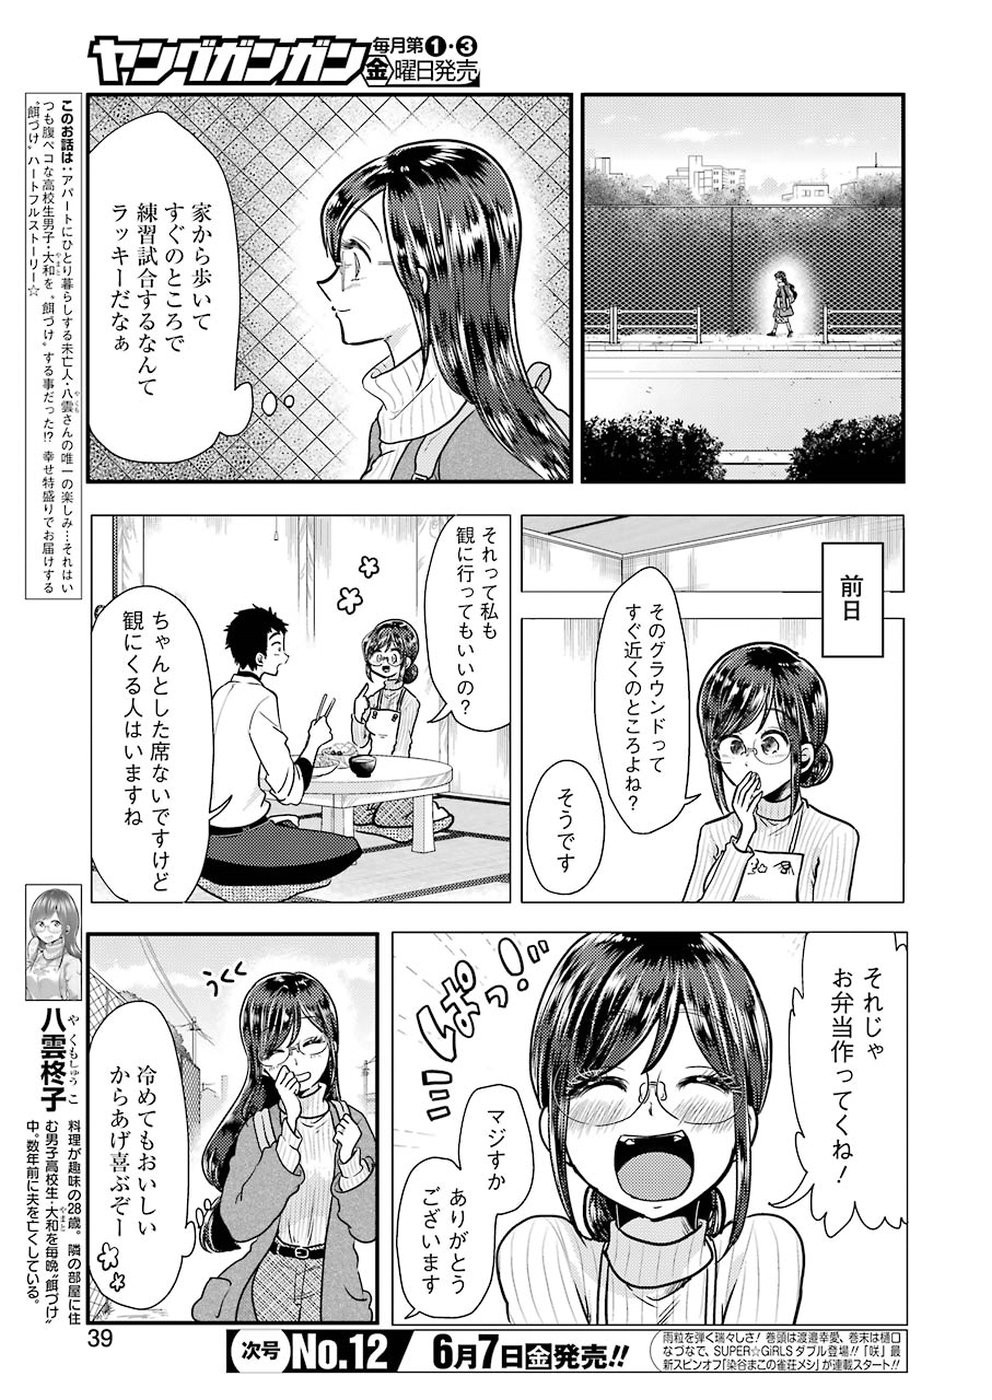 Yakumo-san wa Edzuke ga Shitai. - Chapter 054 - Page 3